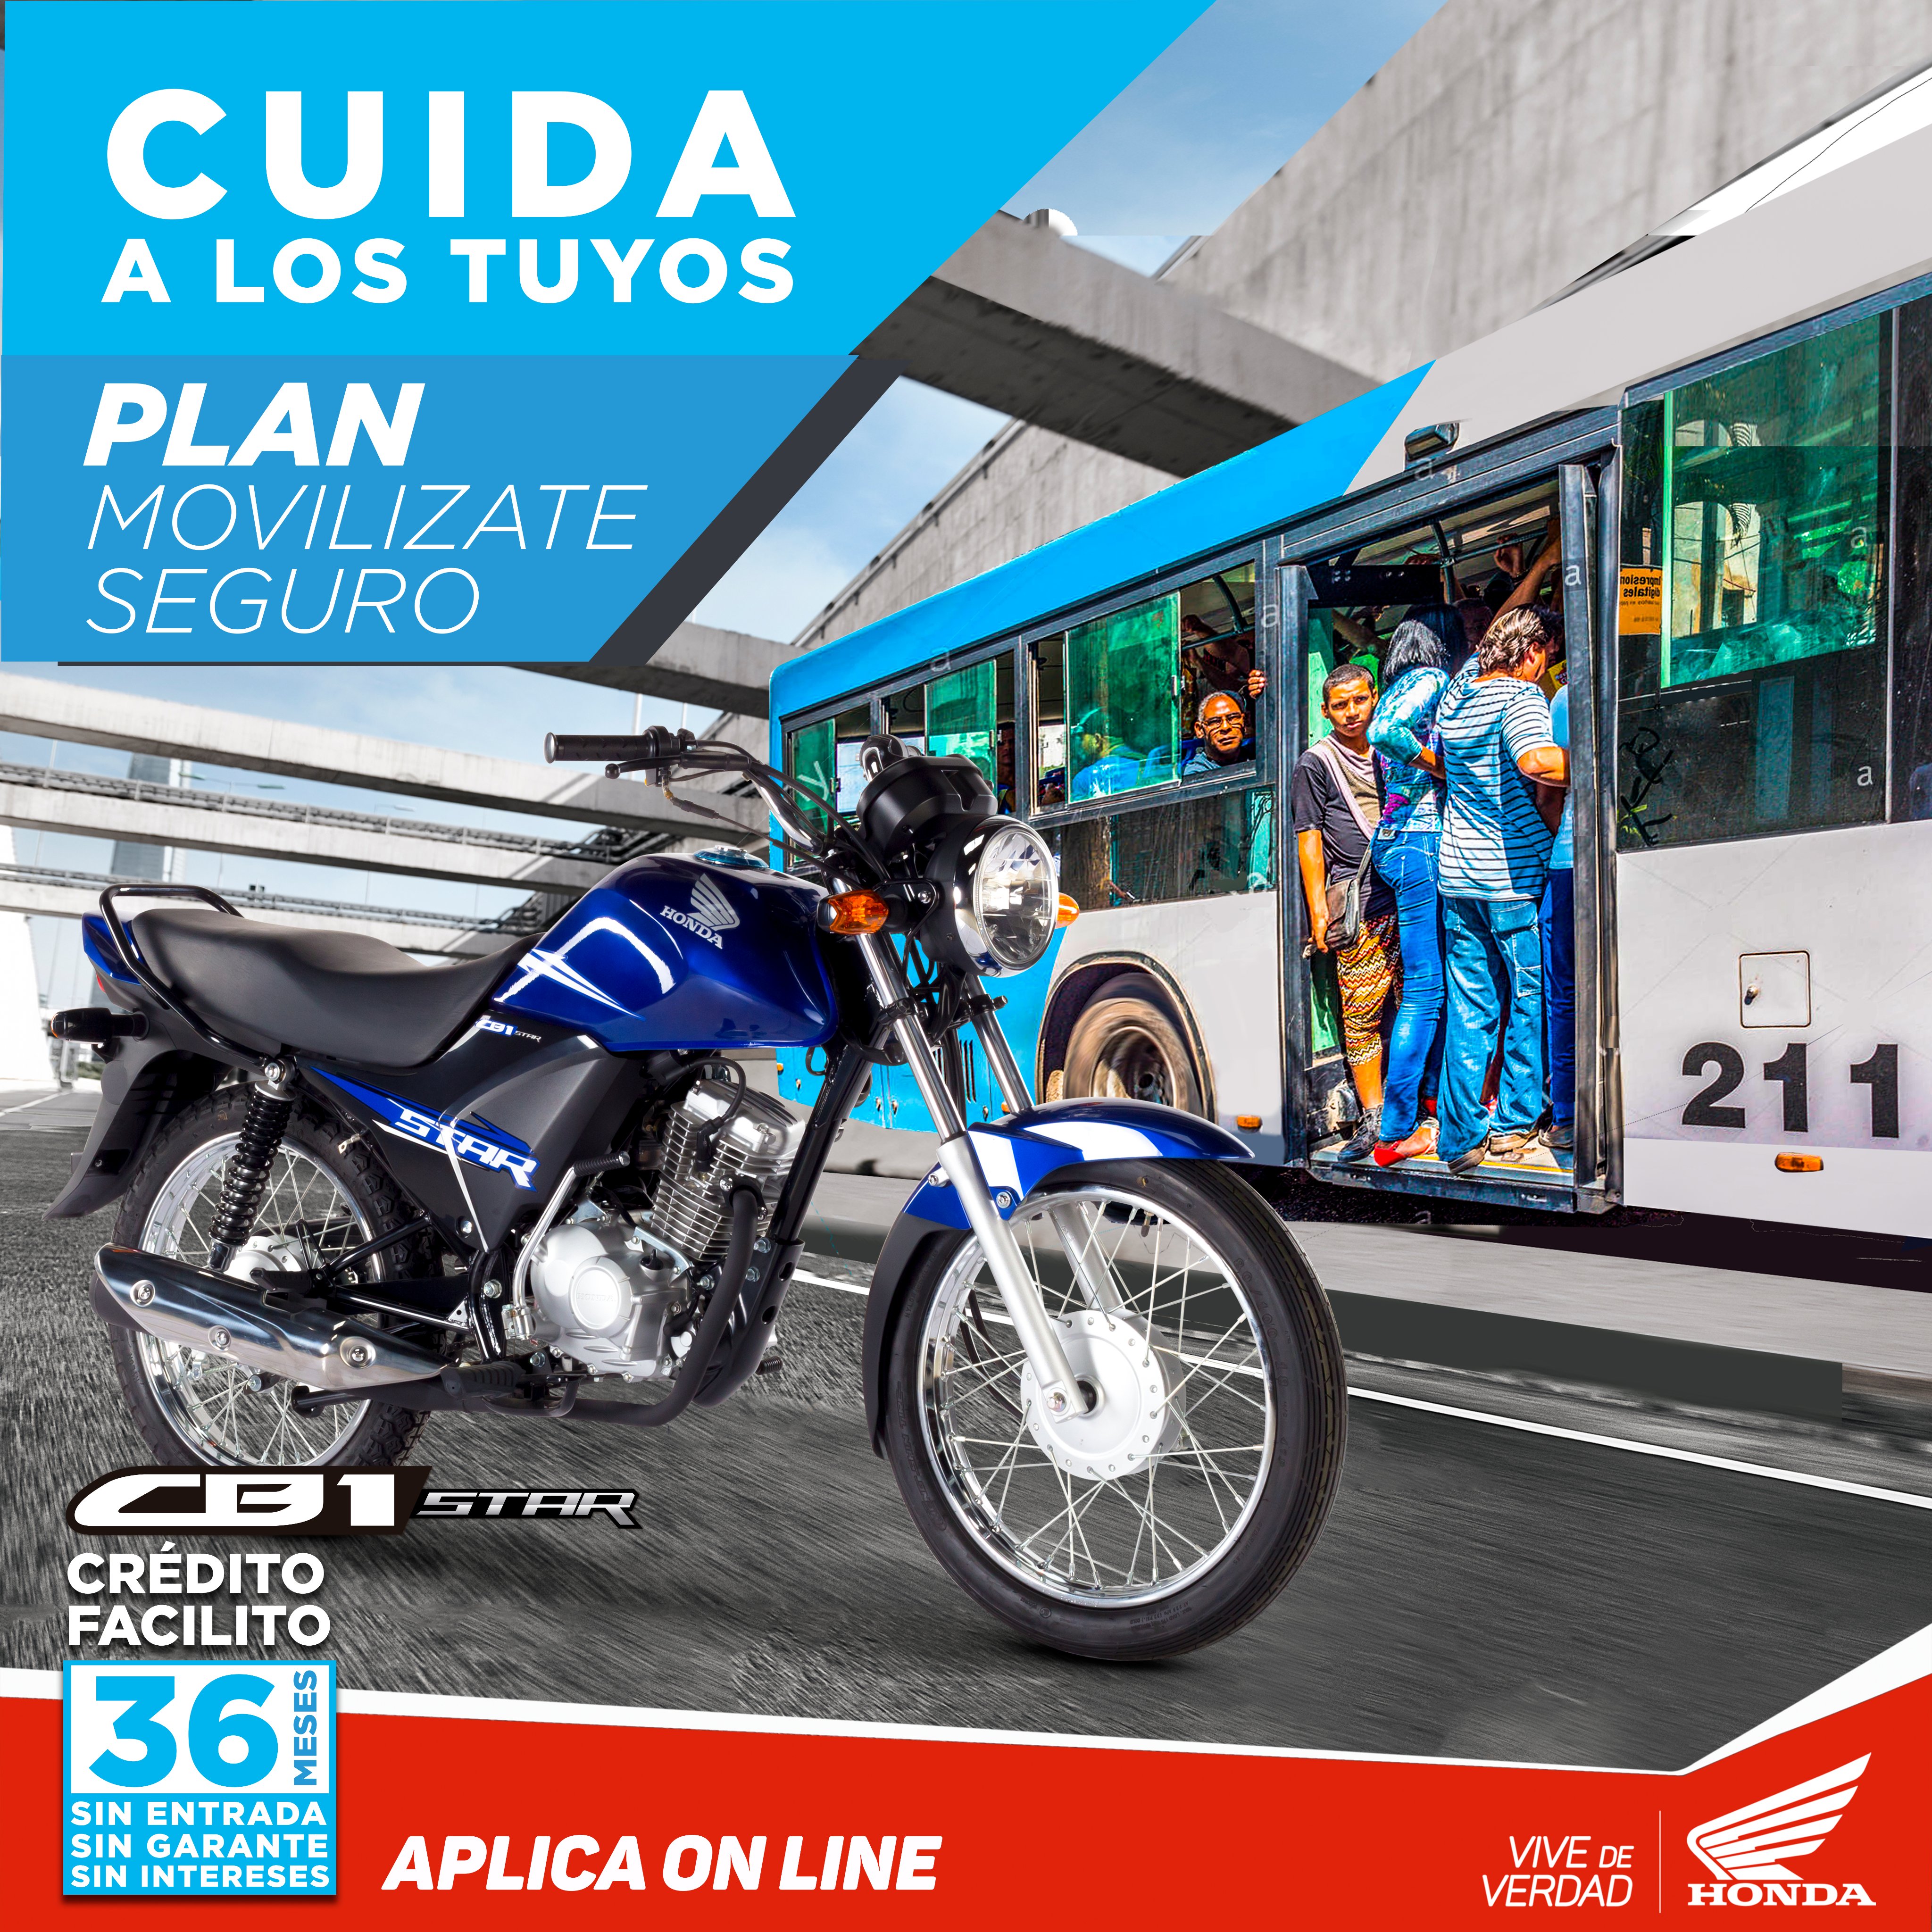 Honda Ecuador - 📣 En #Honda sabemos que la movilización en moto ha  aumentado ¡sin duda es la mejor opción para moverse! por ello, aportamos  con esta campana que genera consciencia para